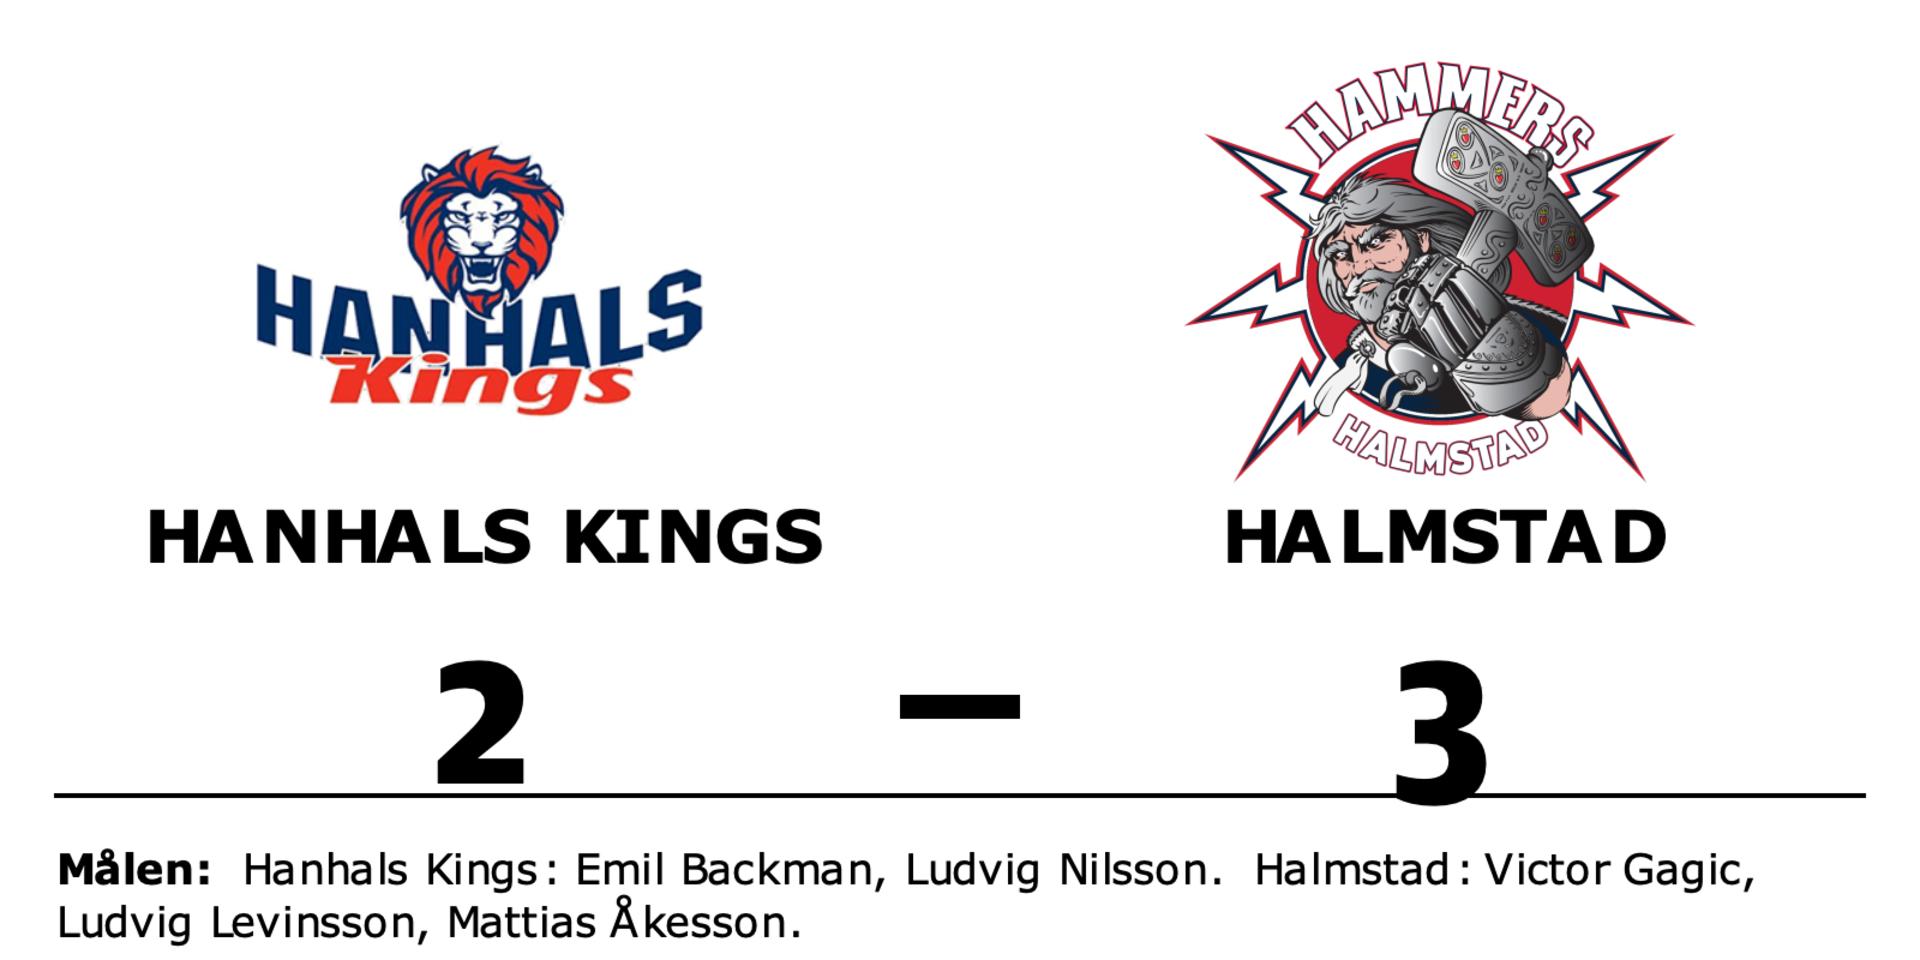 Hanhals Kings förlorade mot Halmstad